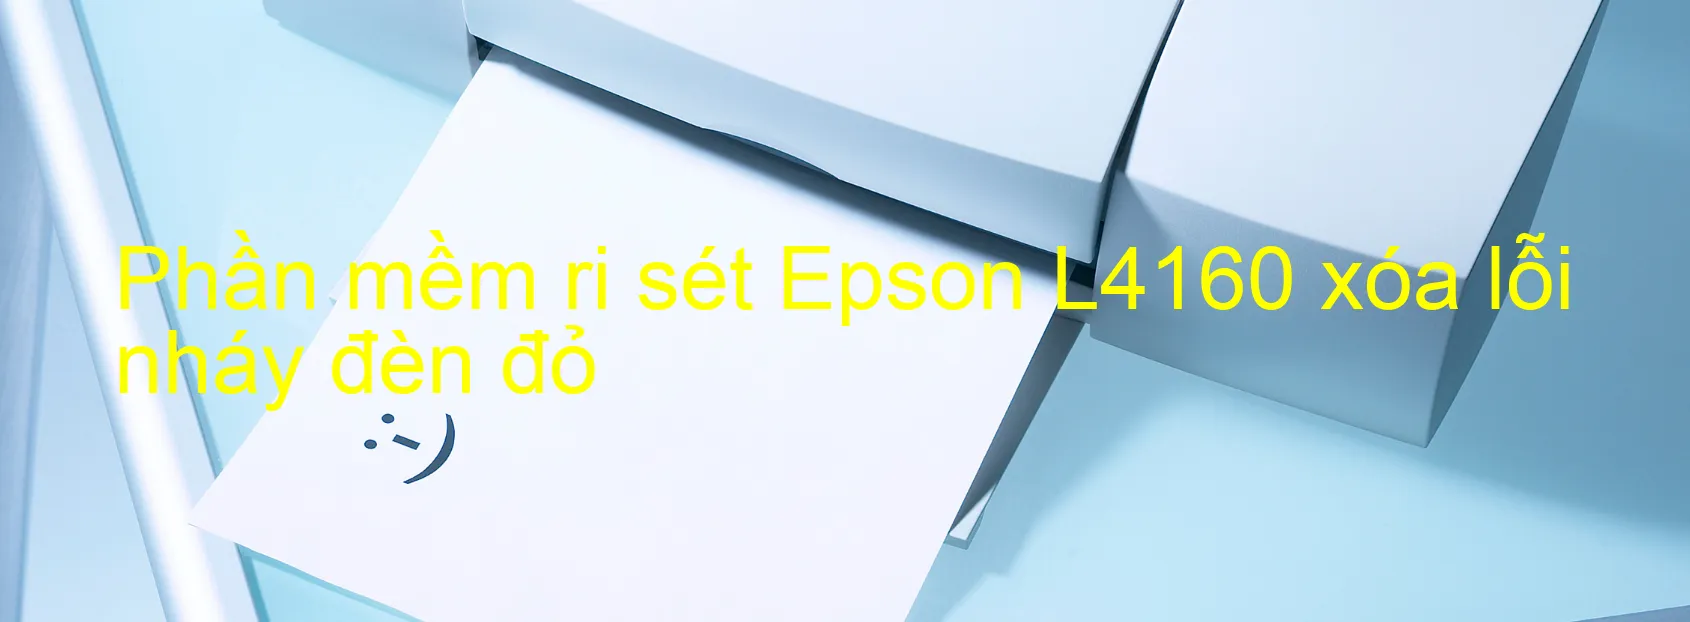 Phần mềm reset Epson L4160 xóa lỗi nháy đèn đỏ